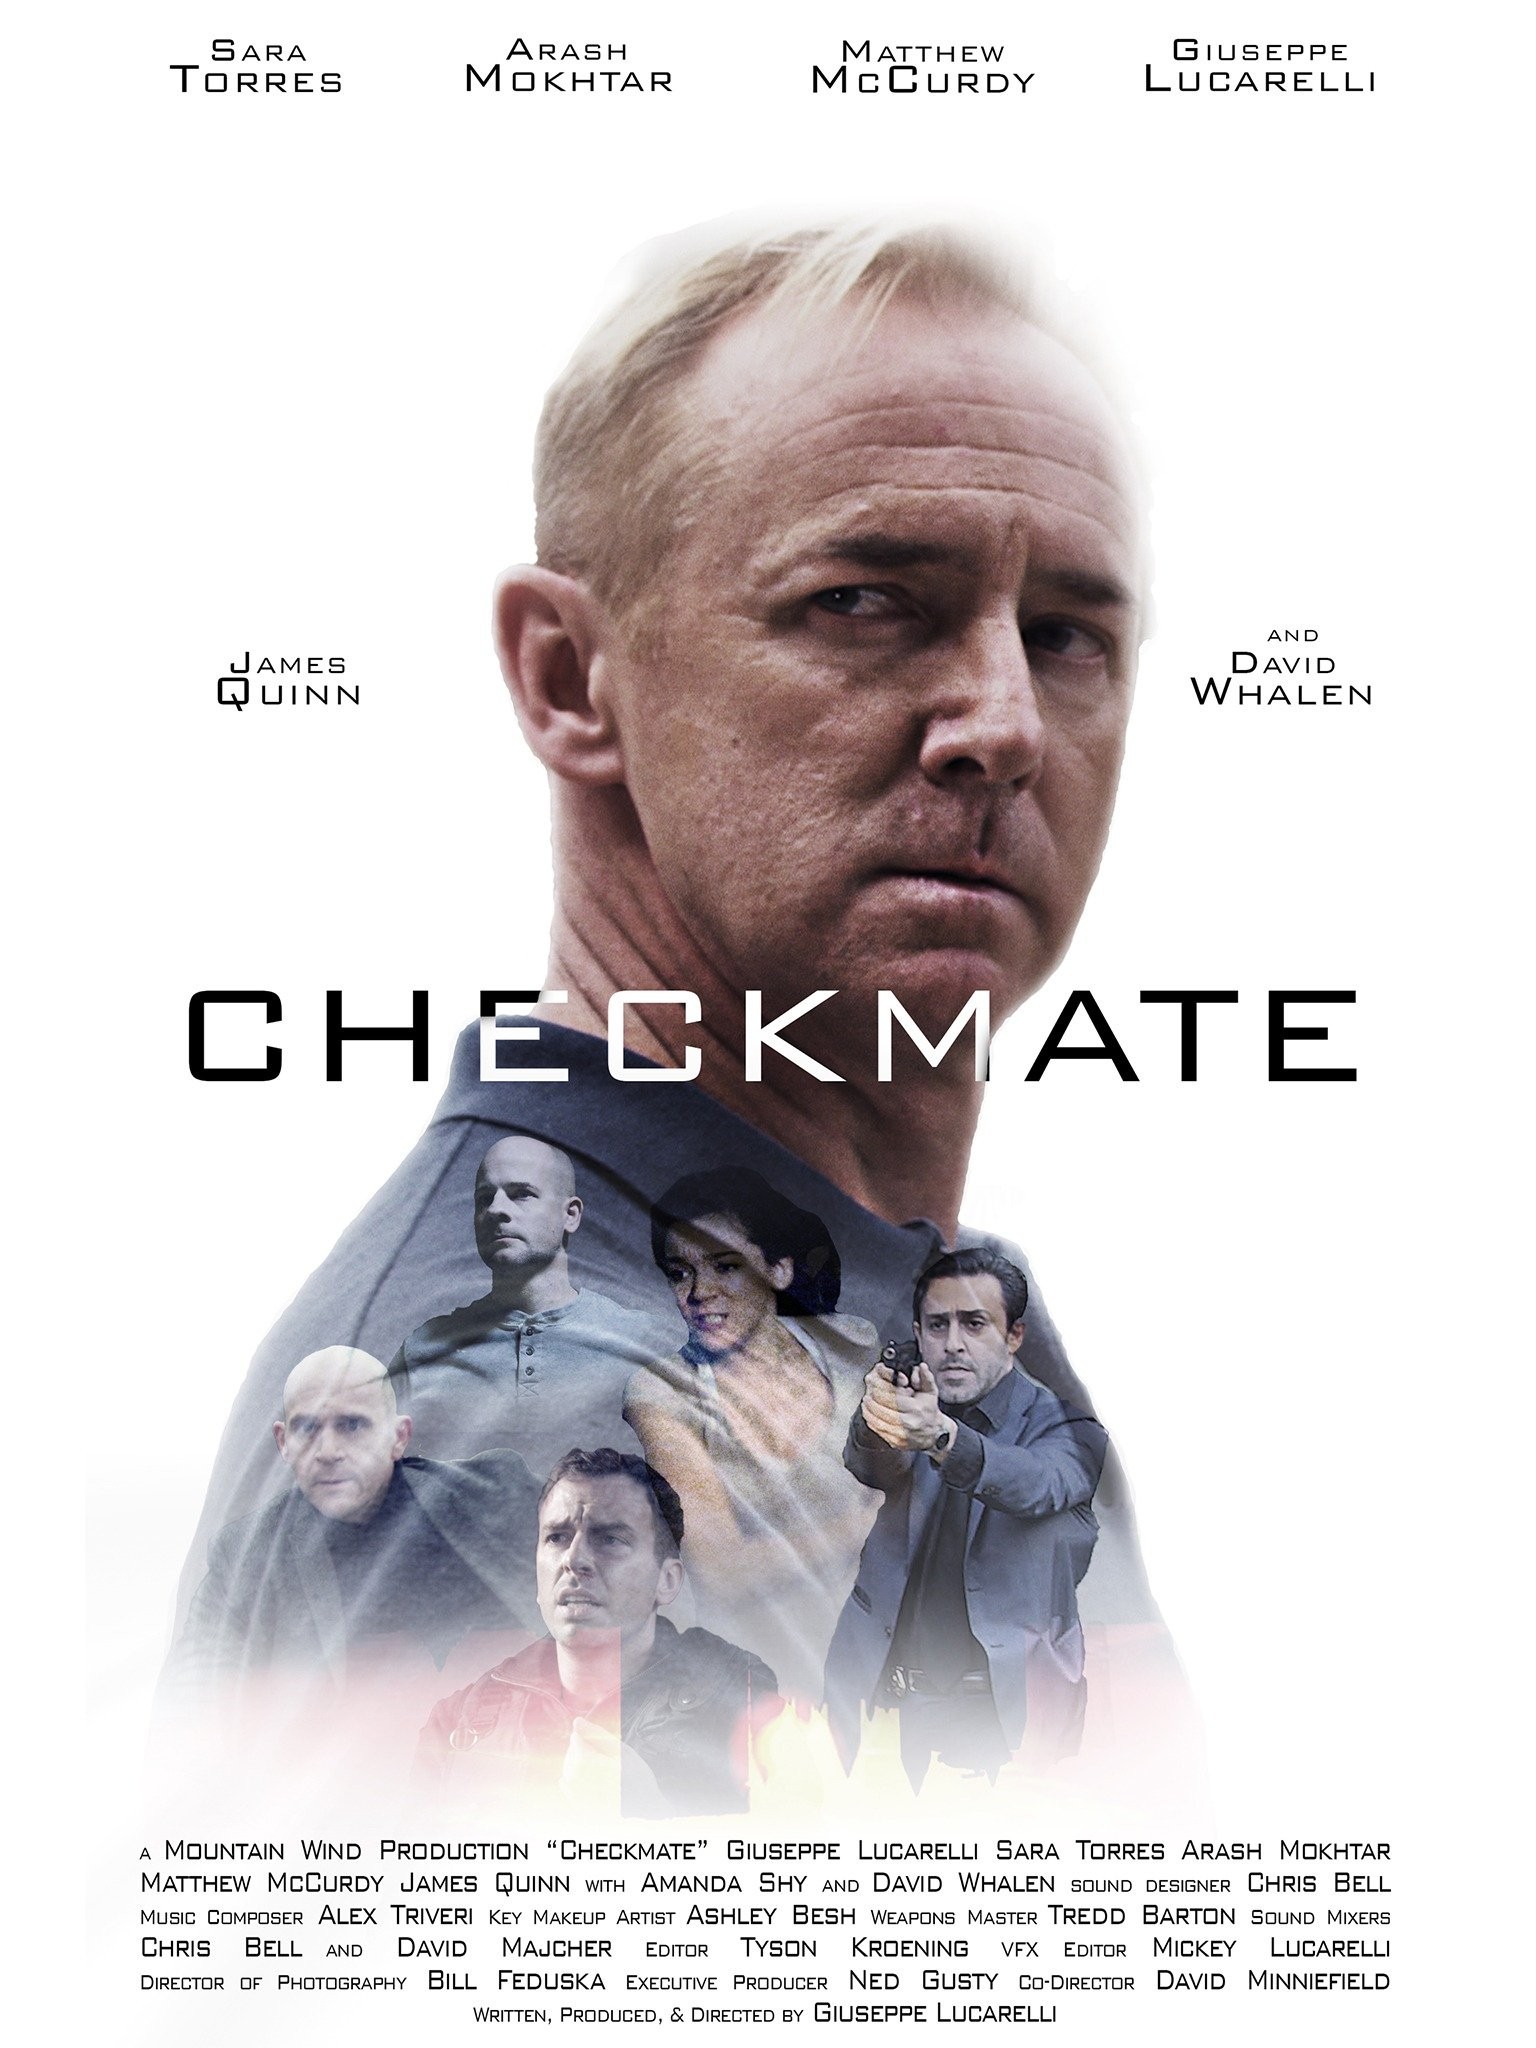 Checkmate for Life (Short) - IMDb